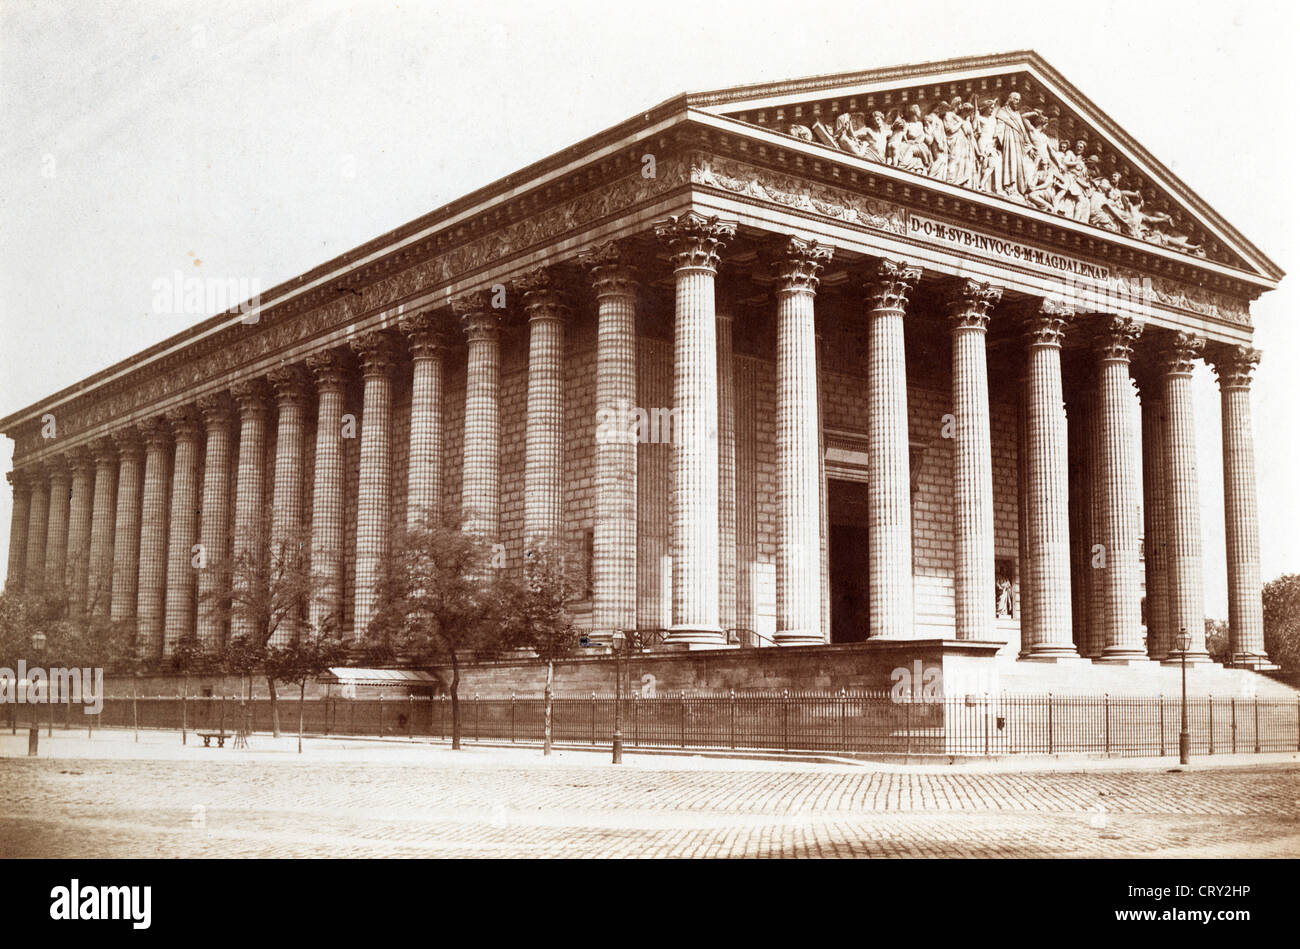 Église de la Madeleine, Paris, ca 1860, by Edouard Baldus Stock Photo